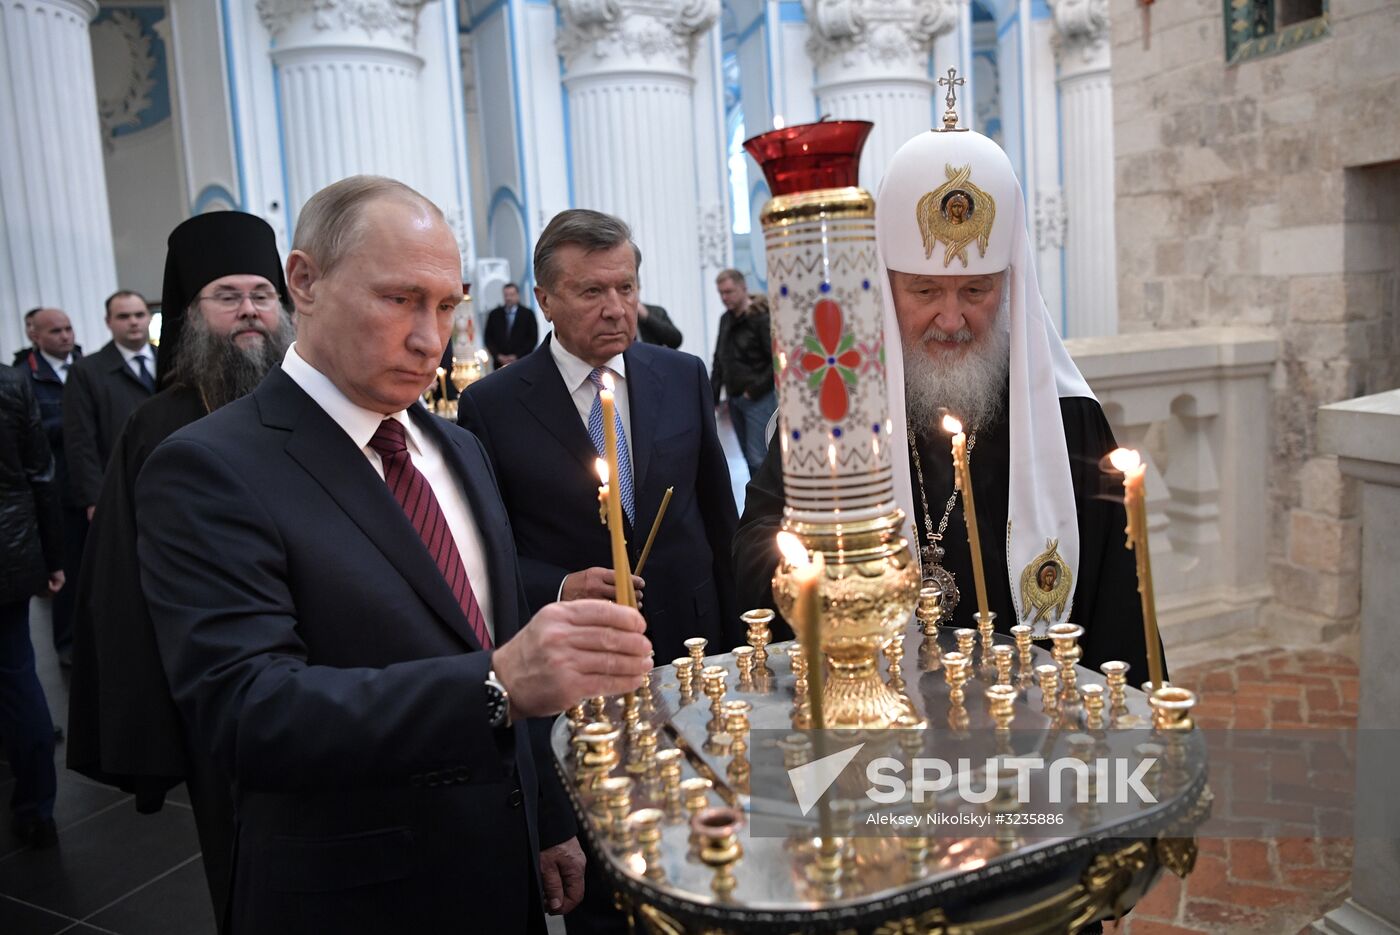 Russian President Vladimir Putin and Prime Minister Dmitry Medvedev New Jerusalem Monastery